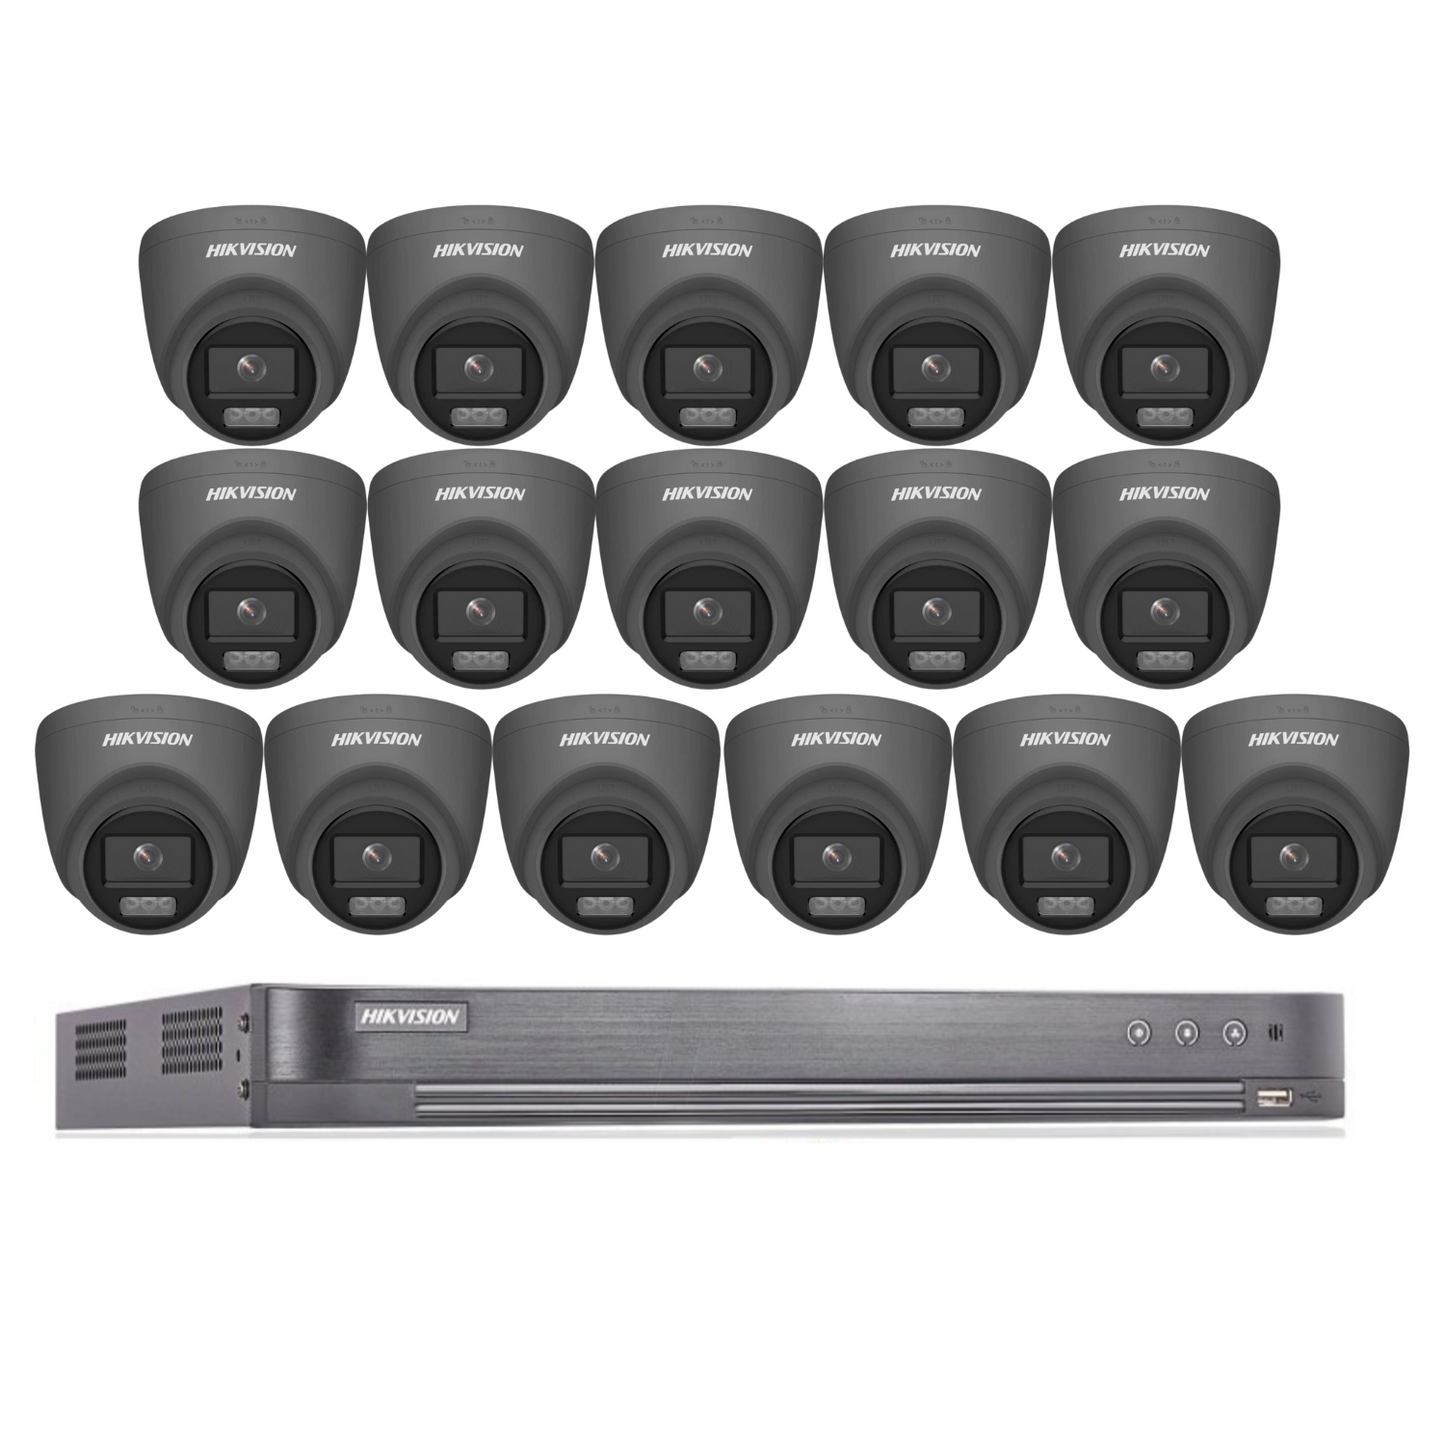 Hikvision CCTV kit, 16 x 5mp Colorvu Acusense cameras, 1 x 16 Channel DVR